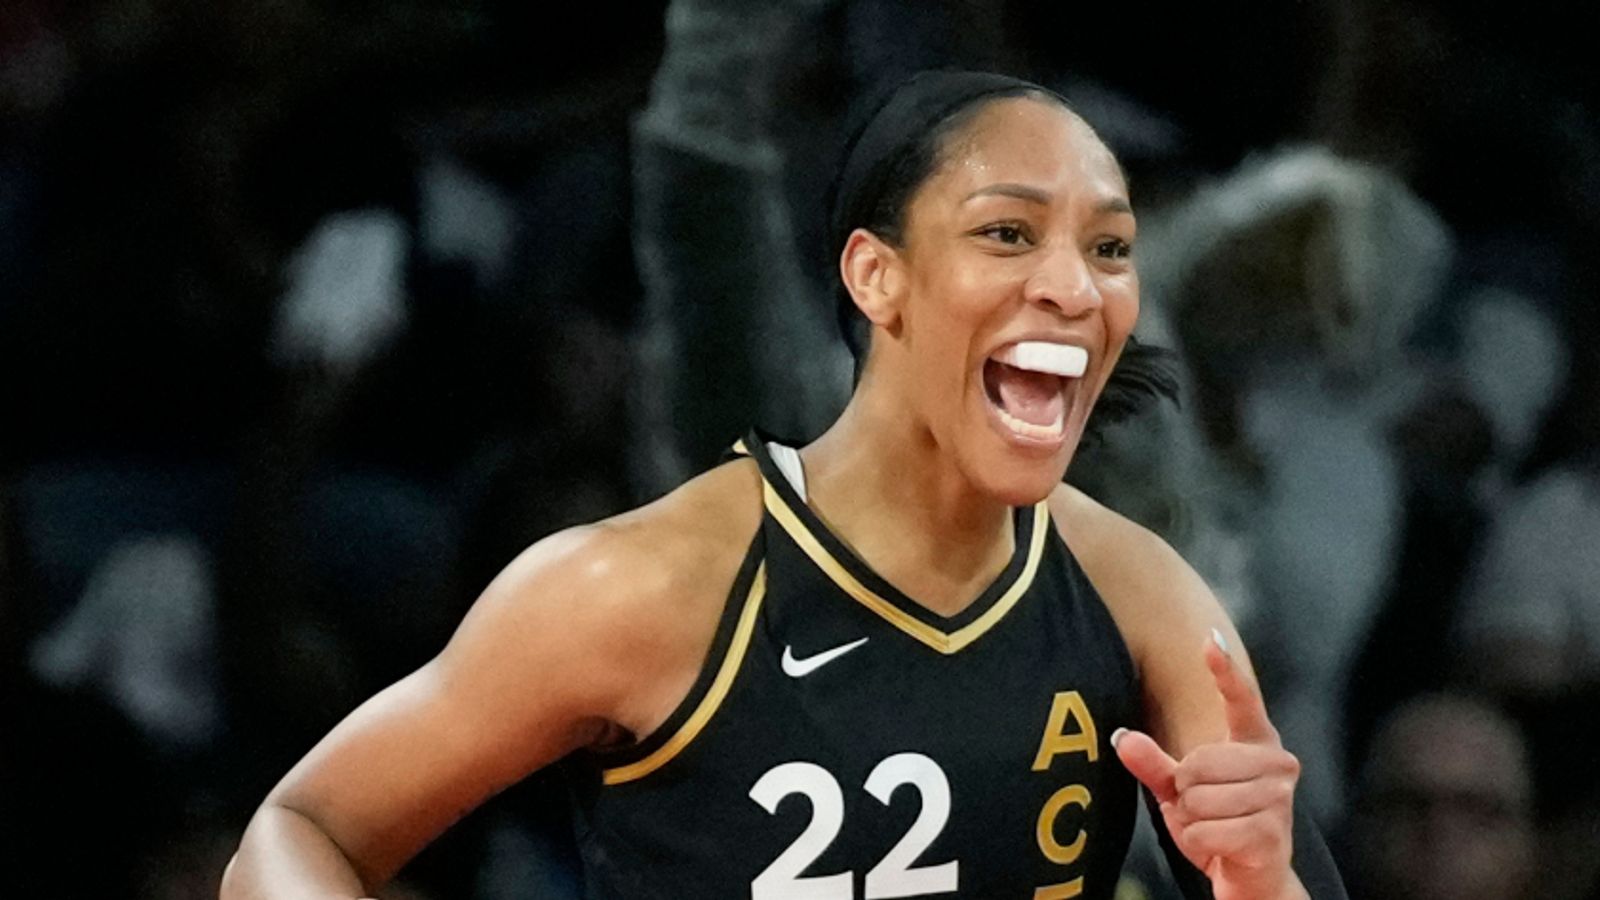 Las Vegas Aces win WNBA championship, beat Connecticut Sun in Finals